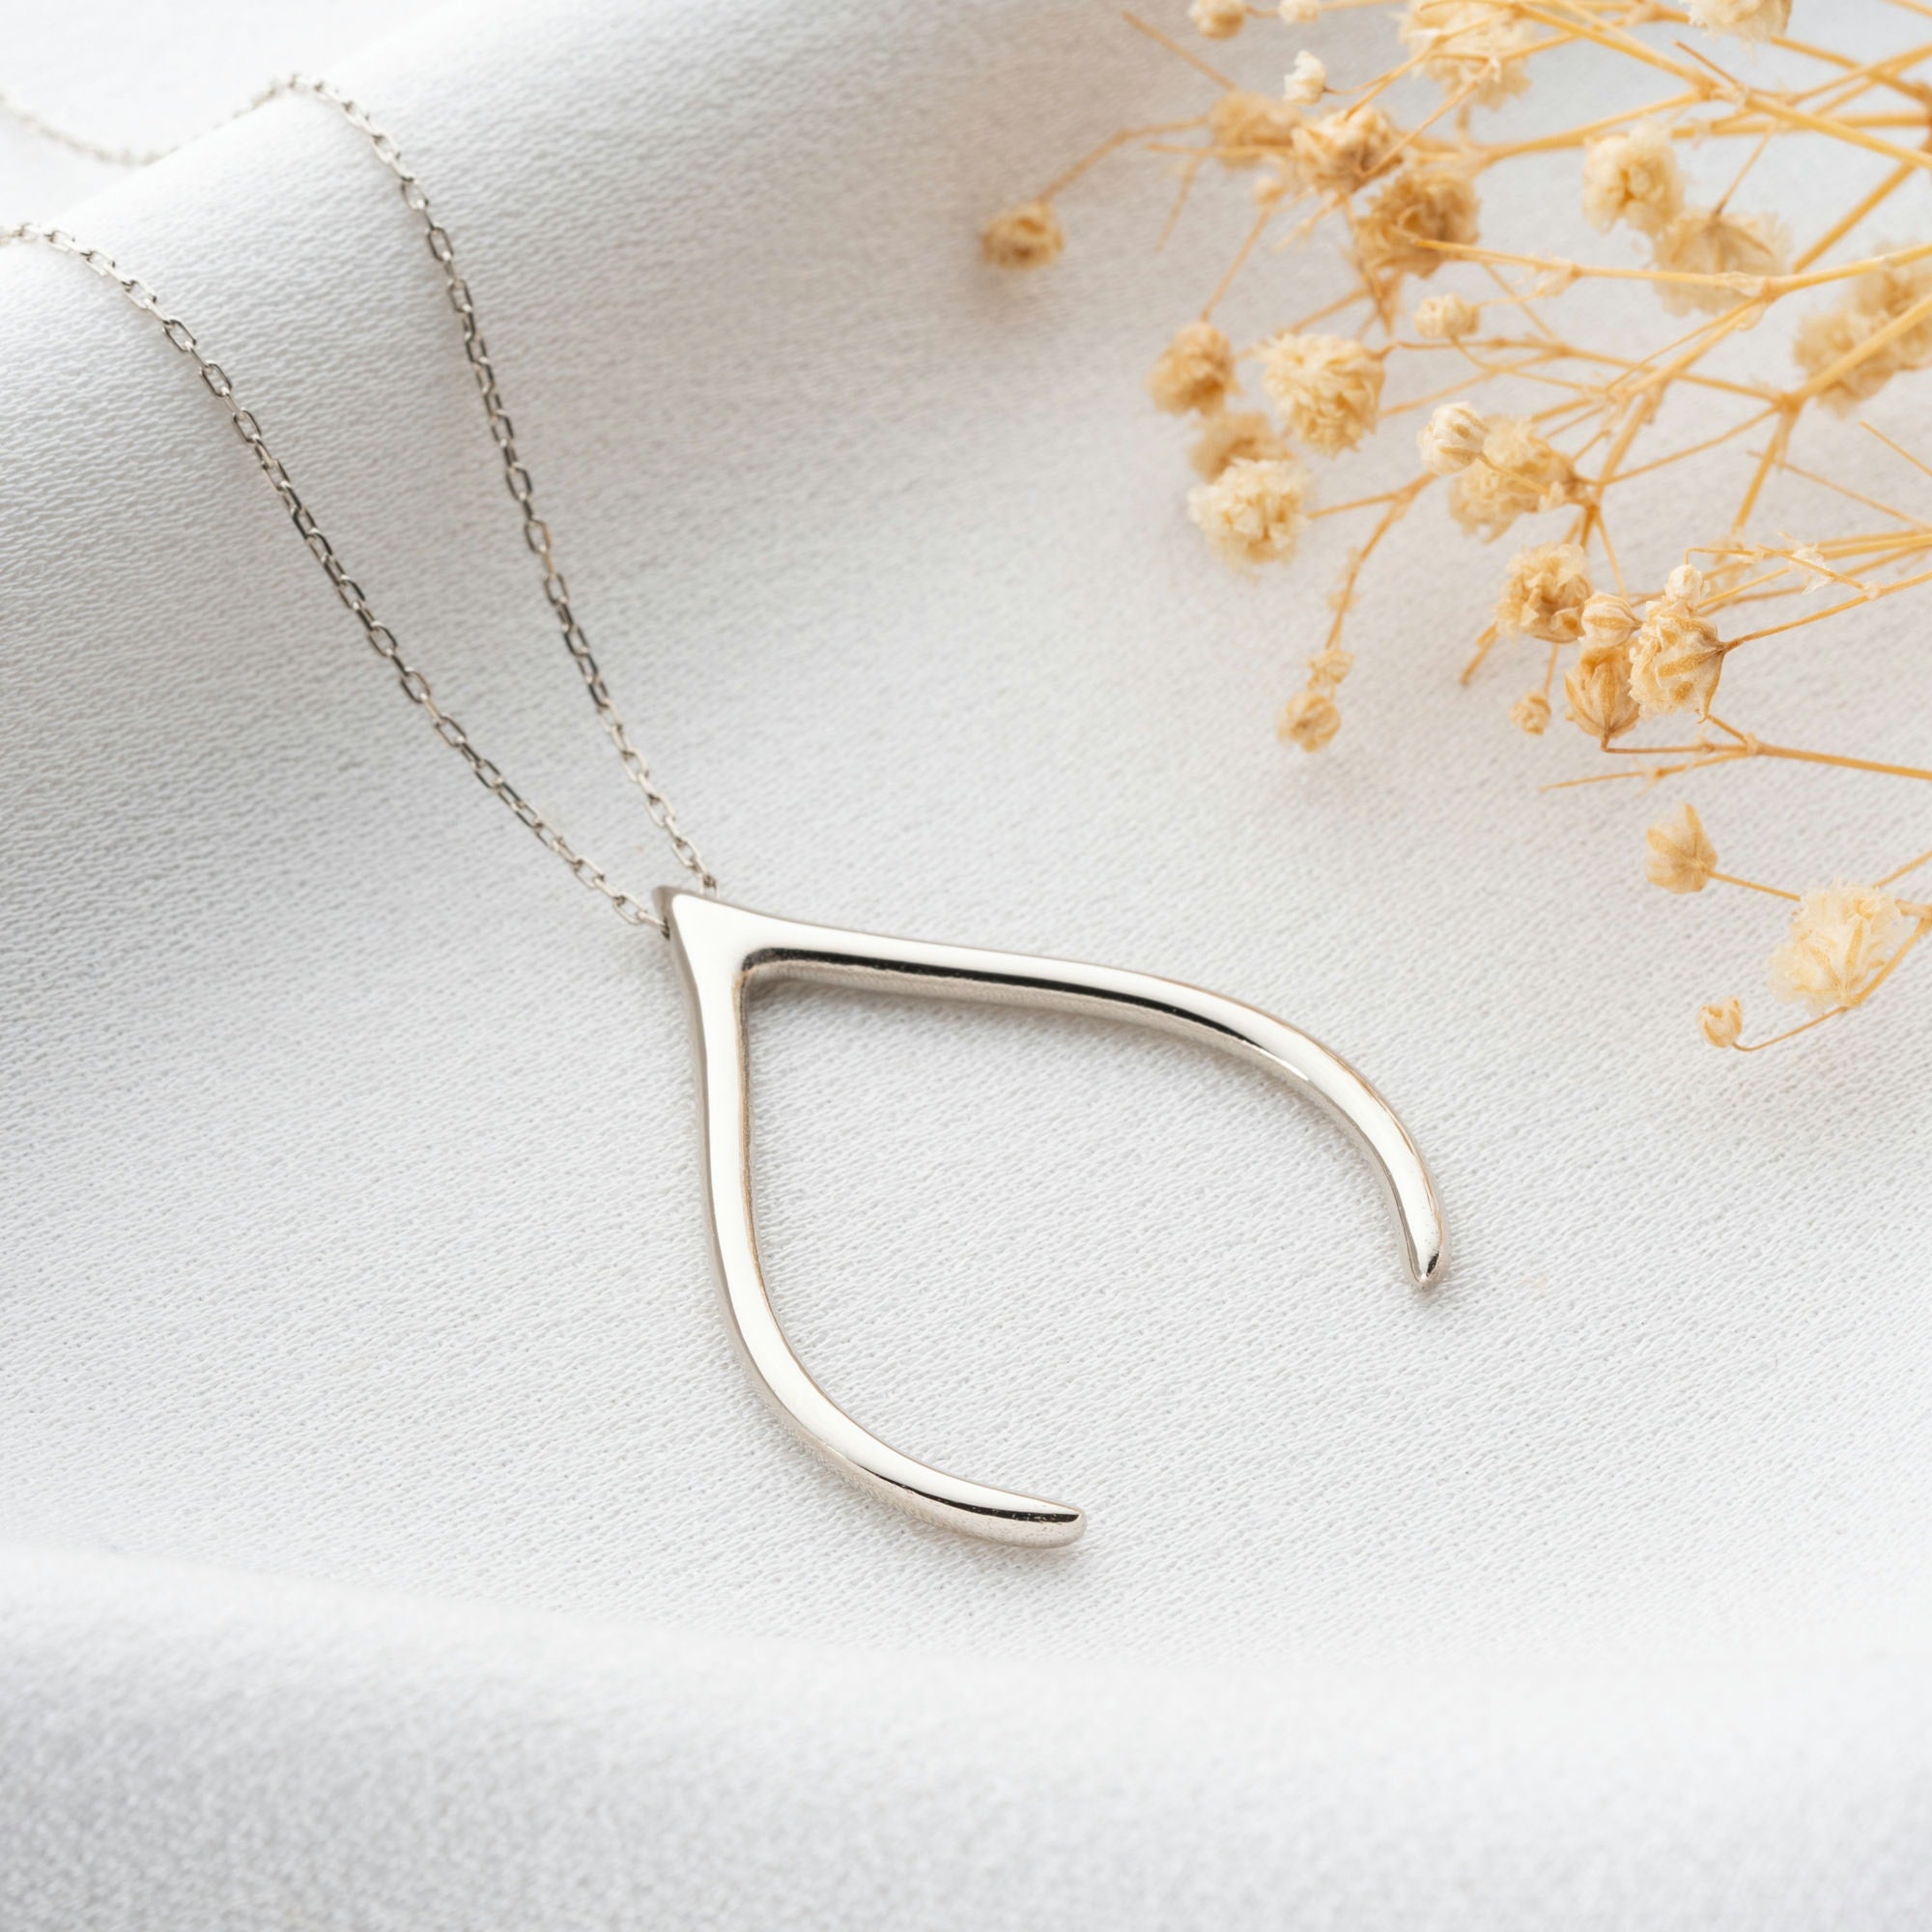 Wishbone Ring Holder Necklace